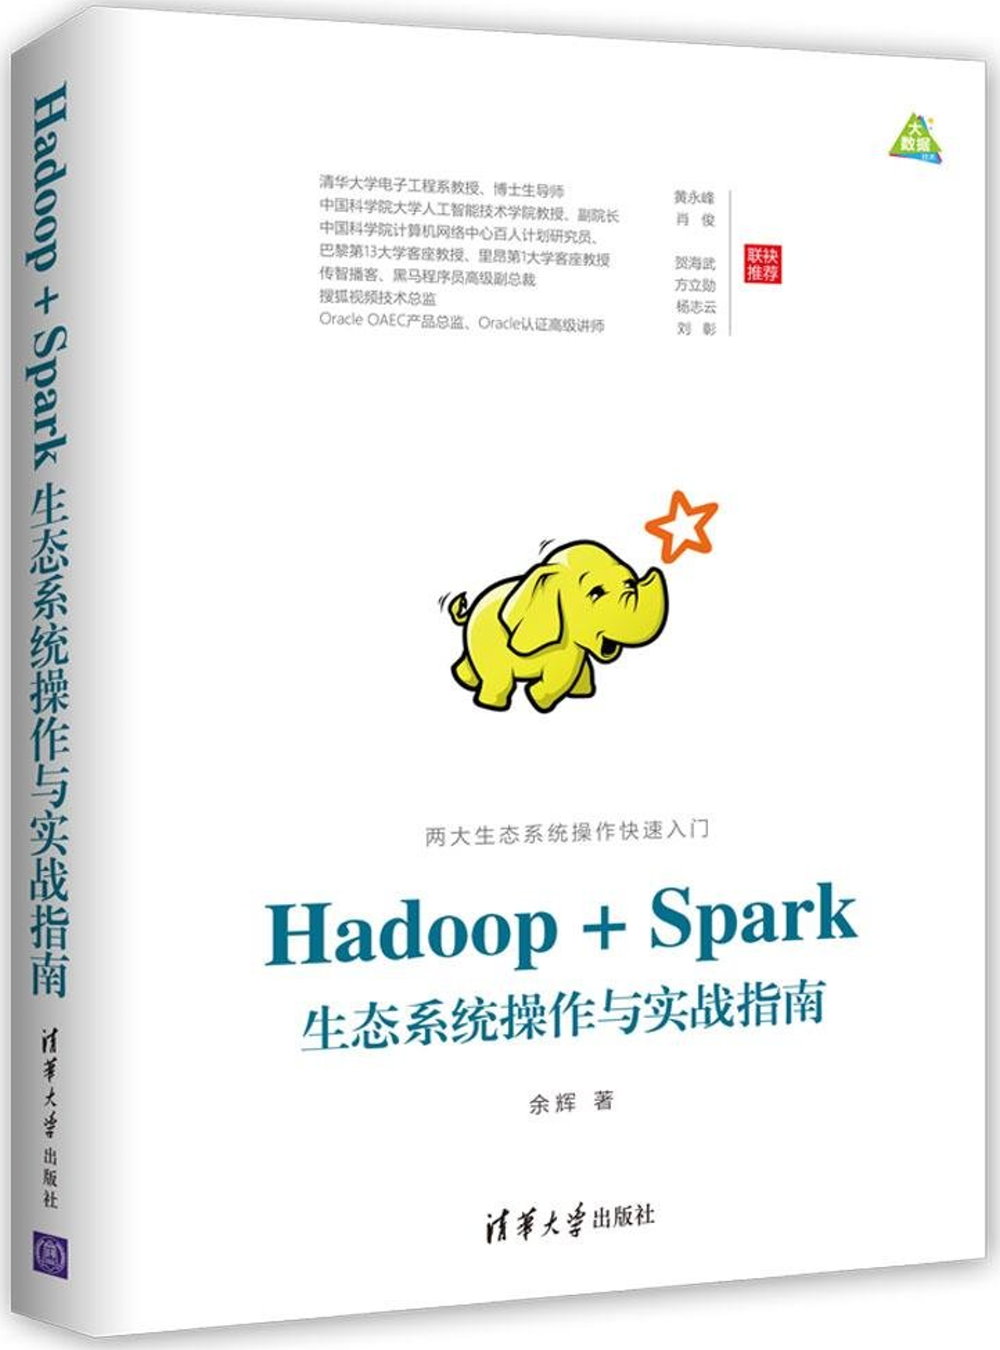 Hadoop+Spark生態系統操作與實戰指南